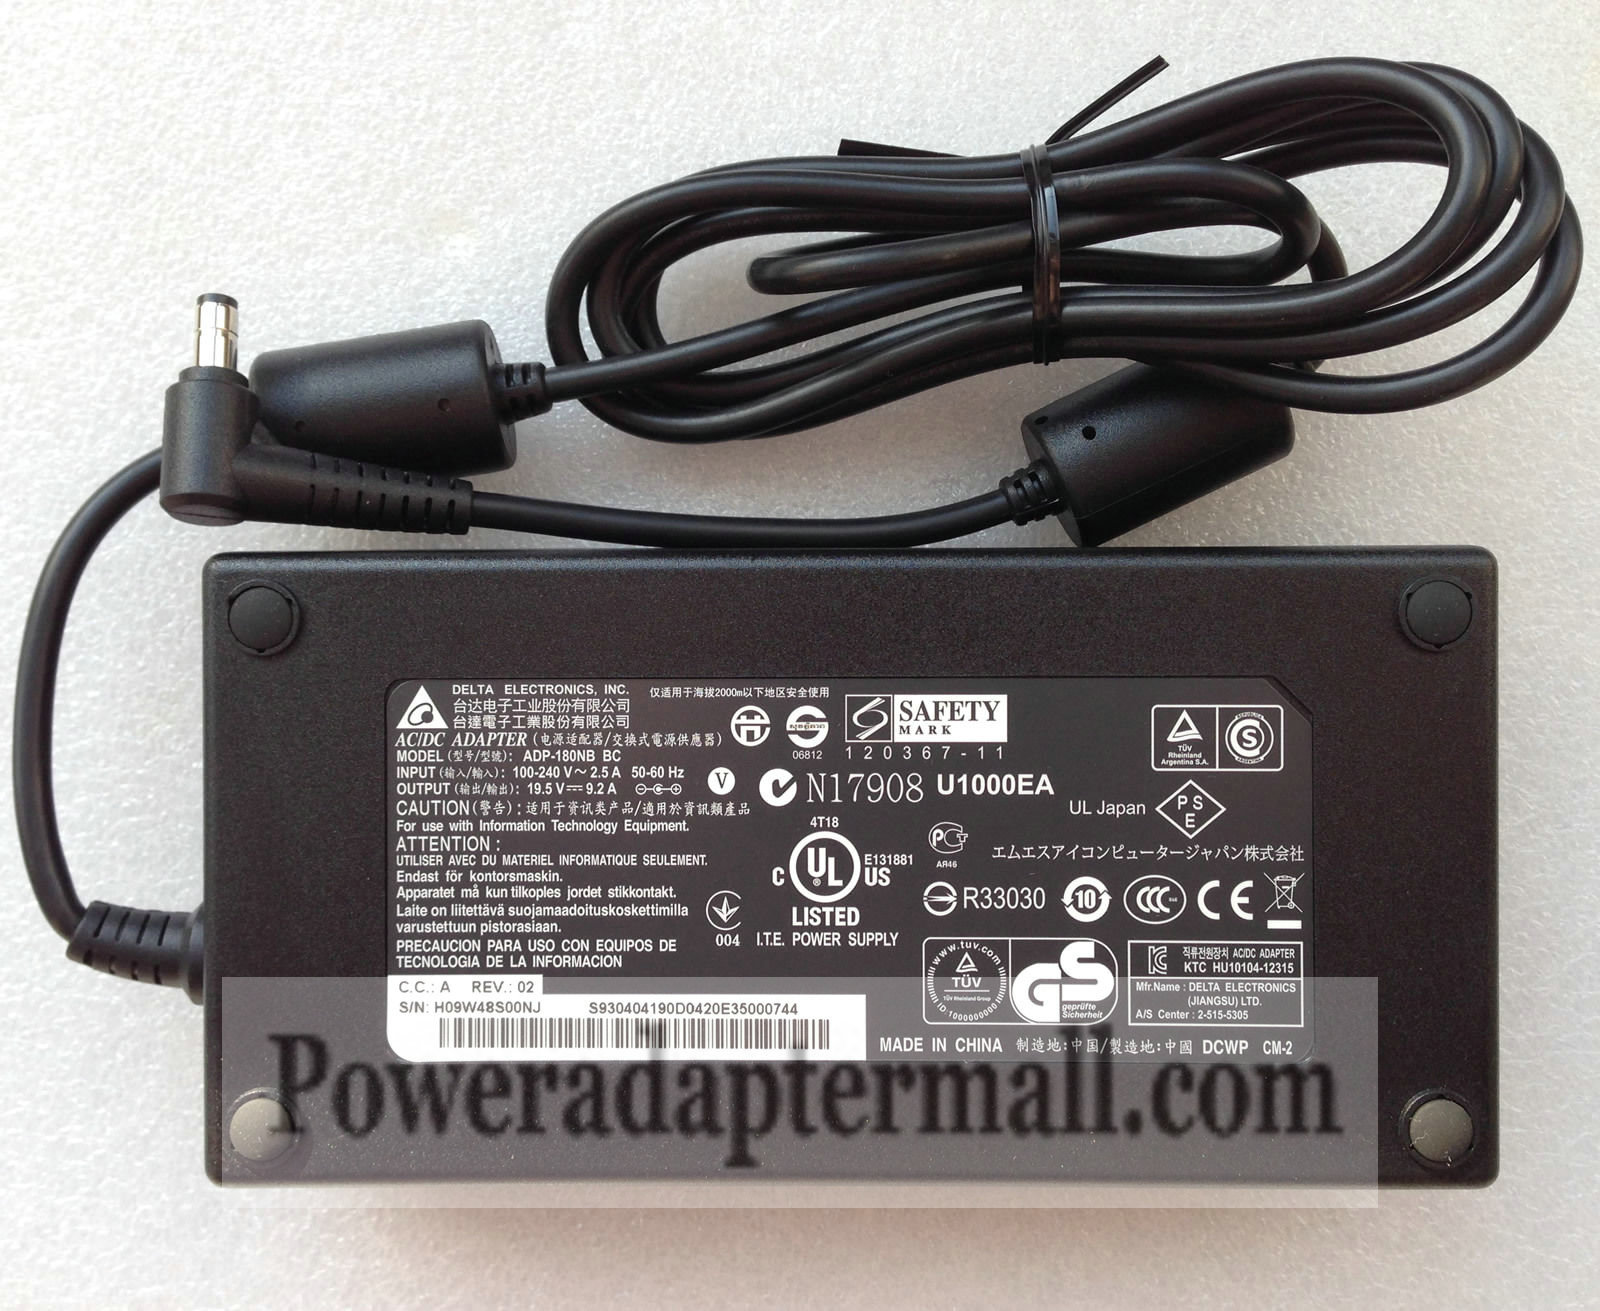 Original 19.5V 9.2A MSI ADP-180NB BC S93-0404190-D04 AC Adapter